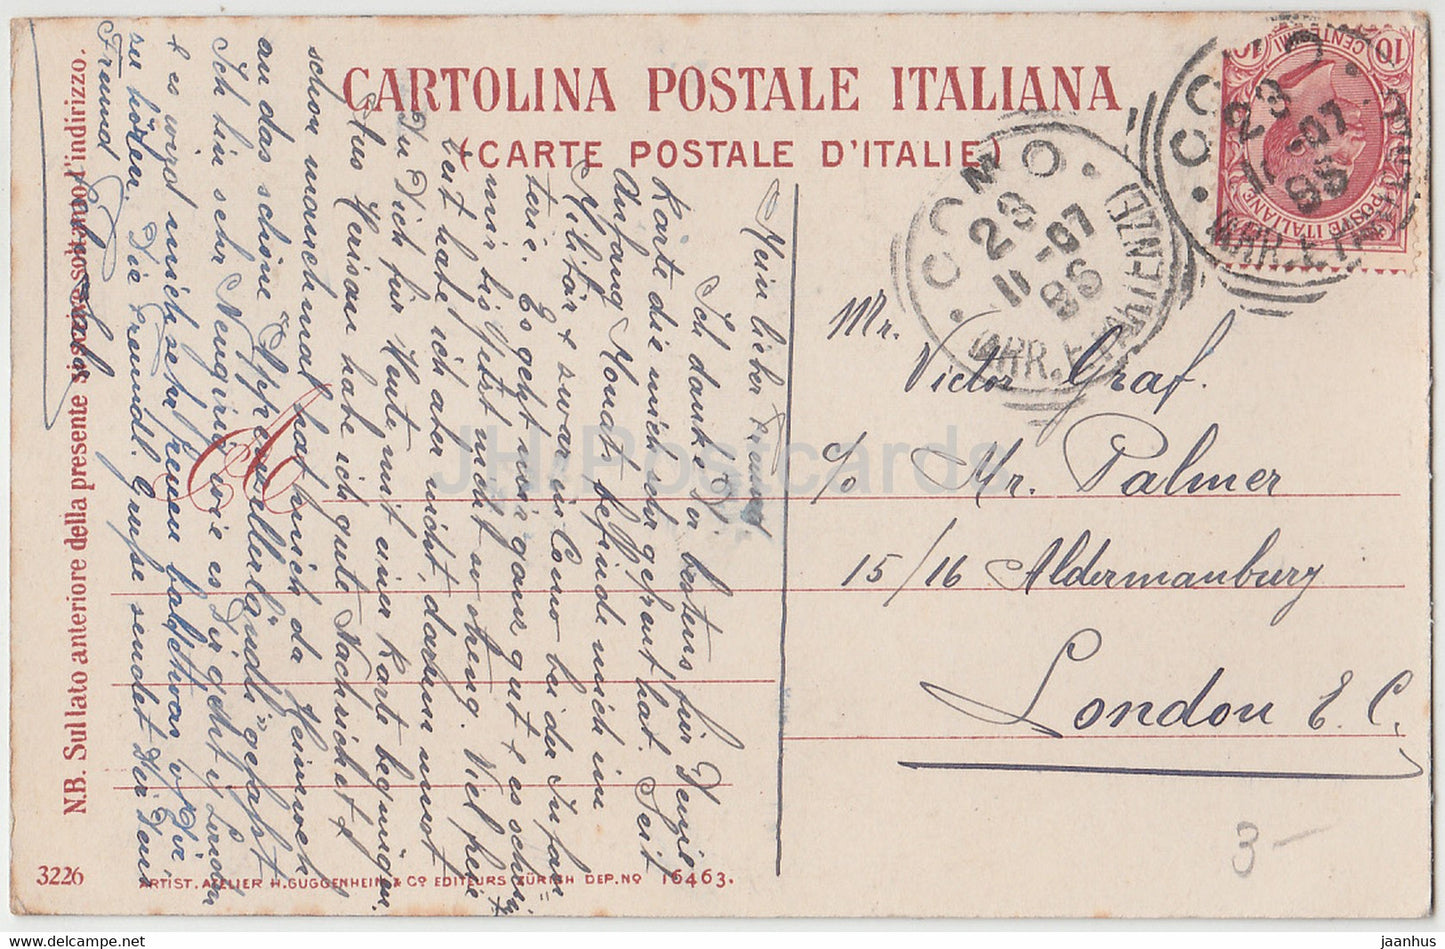 femme - Lombardie - costumes folkloriques - 3226 - carte postale ancienne - Italie - utilisé